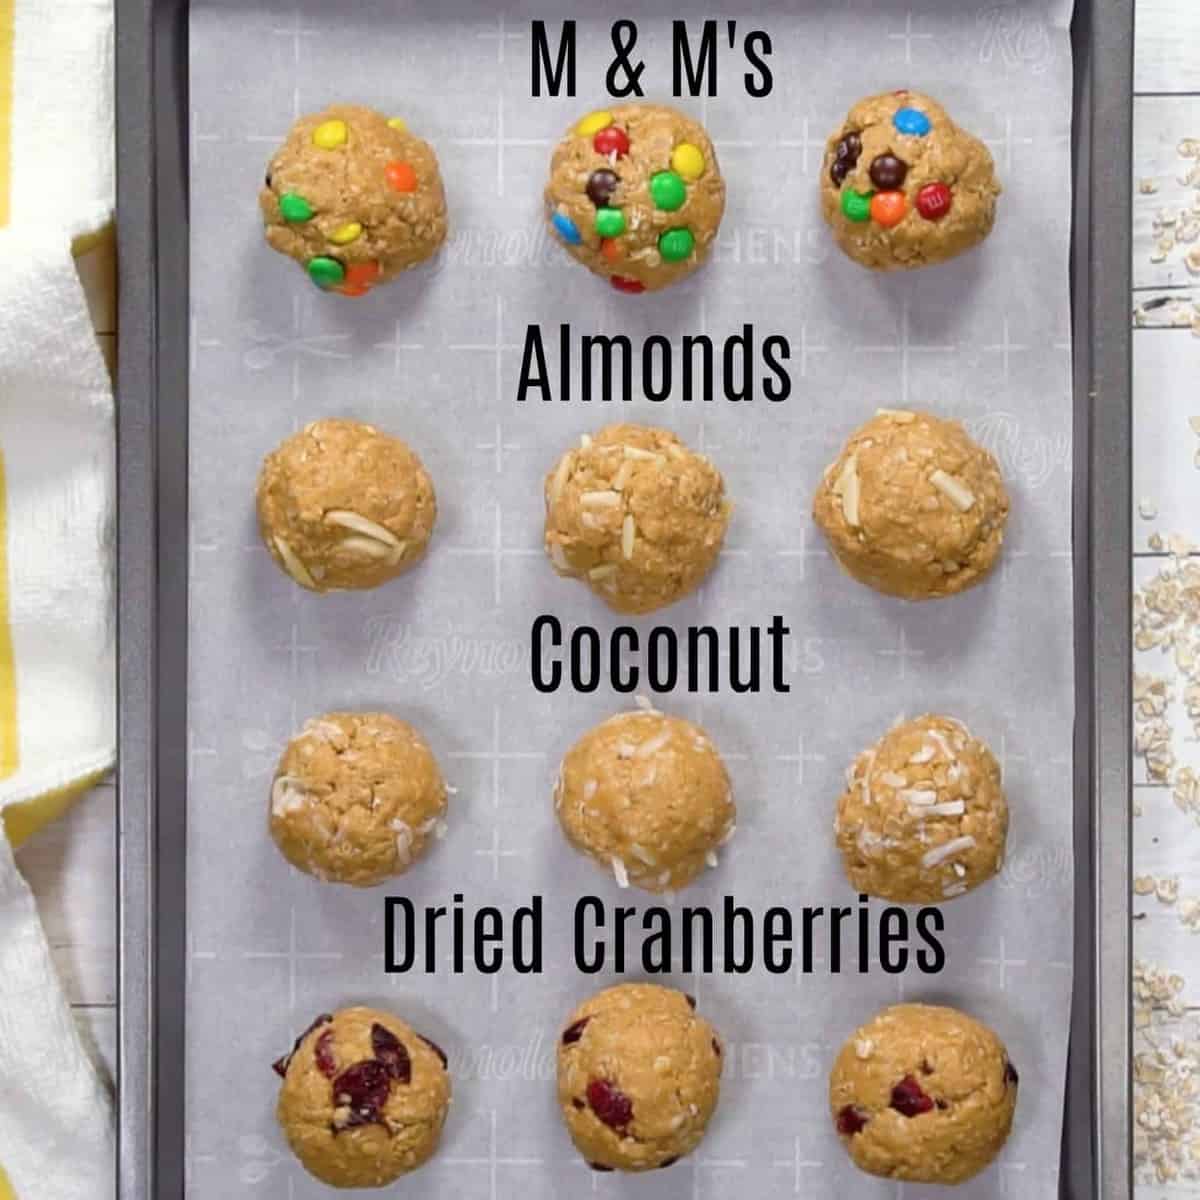 Energy Balls Four Ways - M&M's Almonds Coconut Dried Cranberries